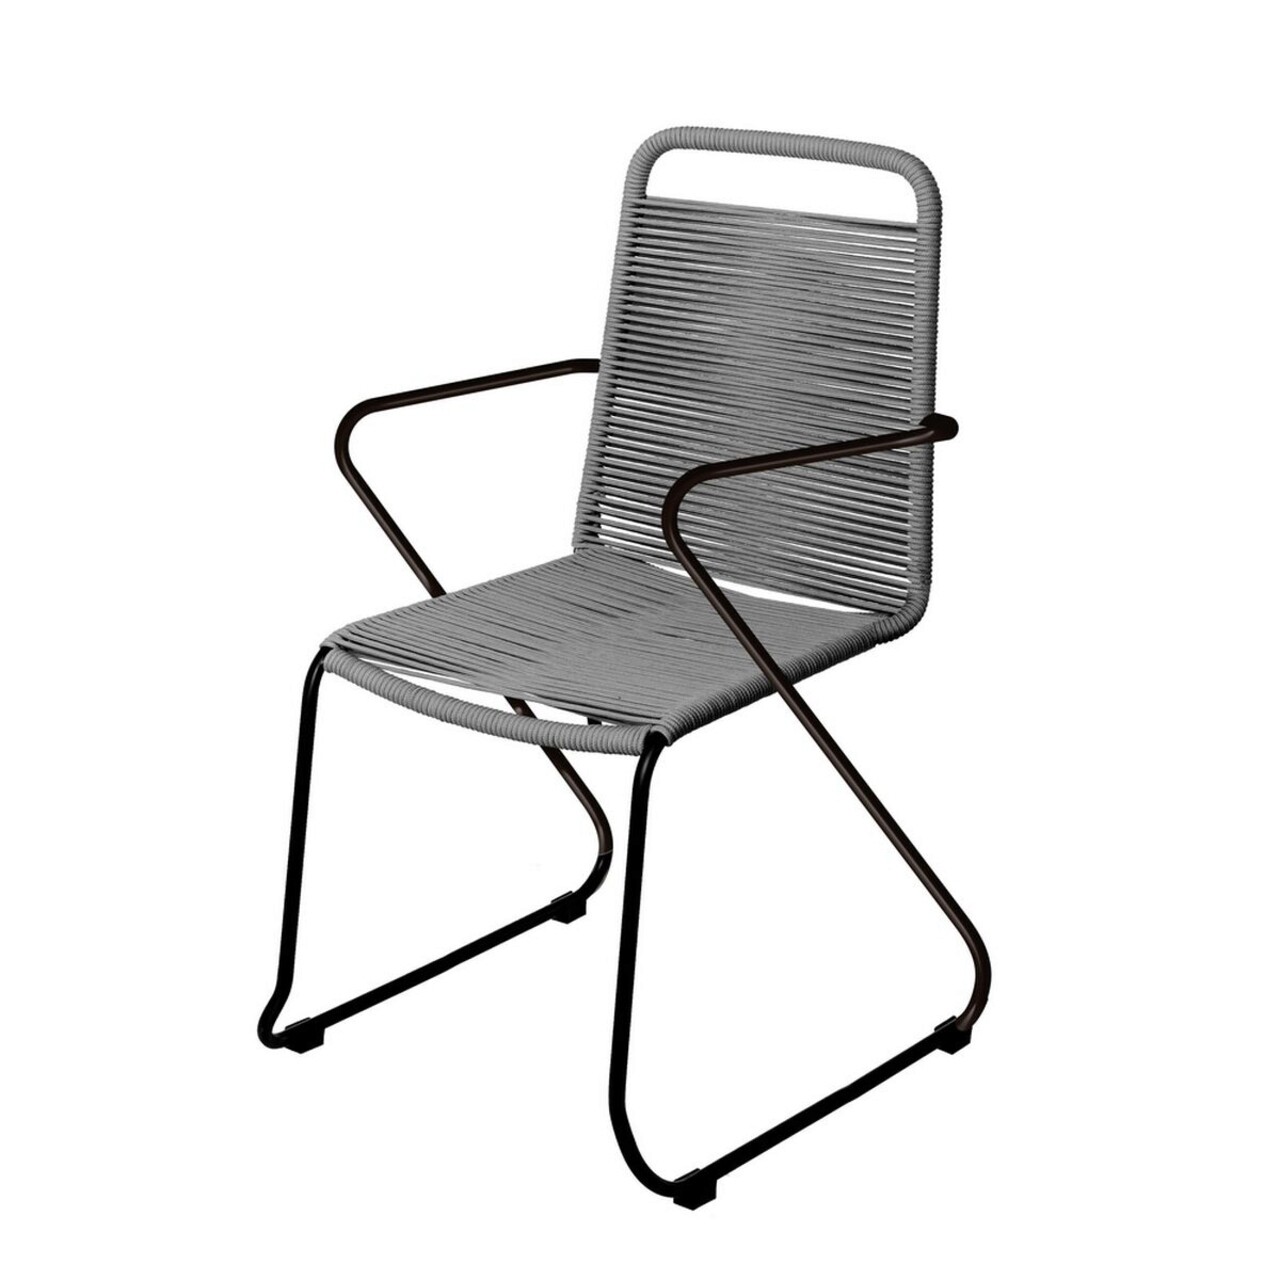 Antea Kerti szék, 53 x 53 x 88 cm, acél/madzag, sötétszürke